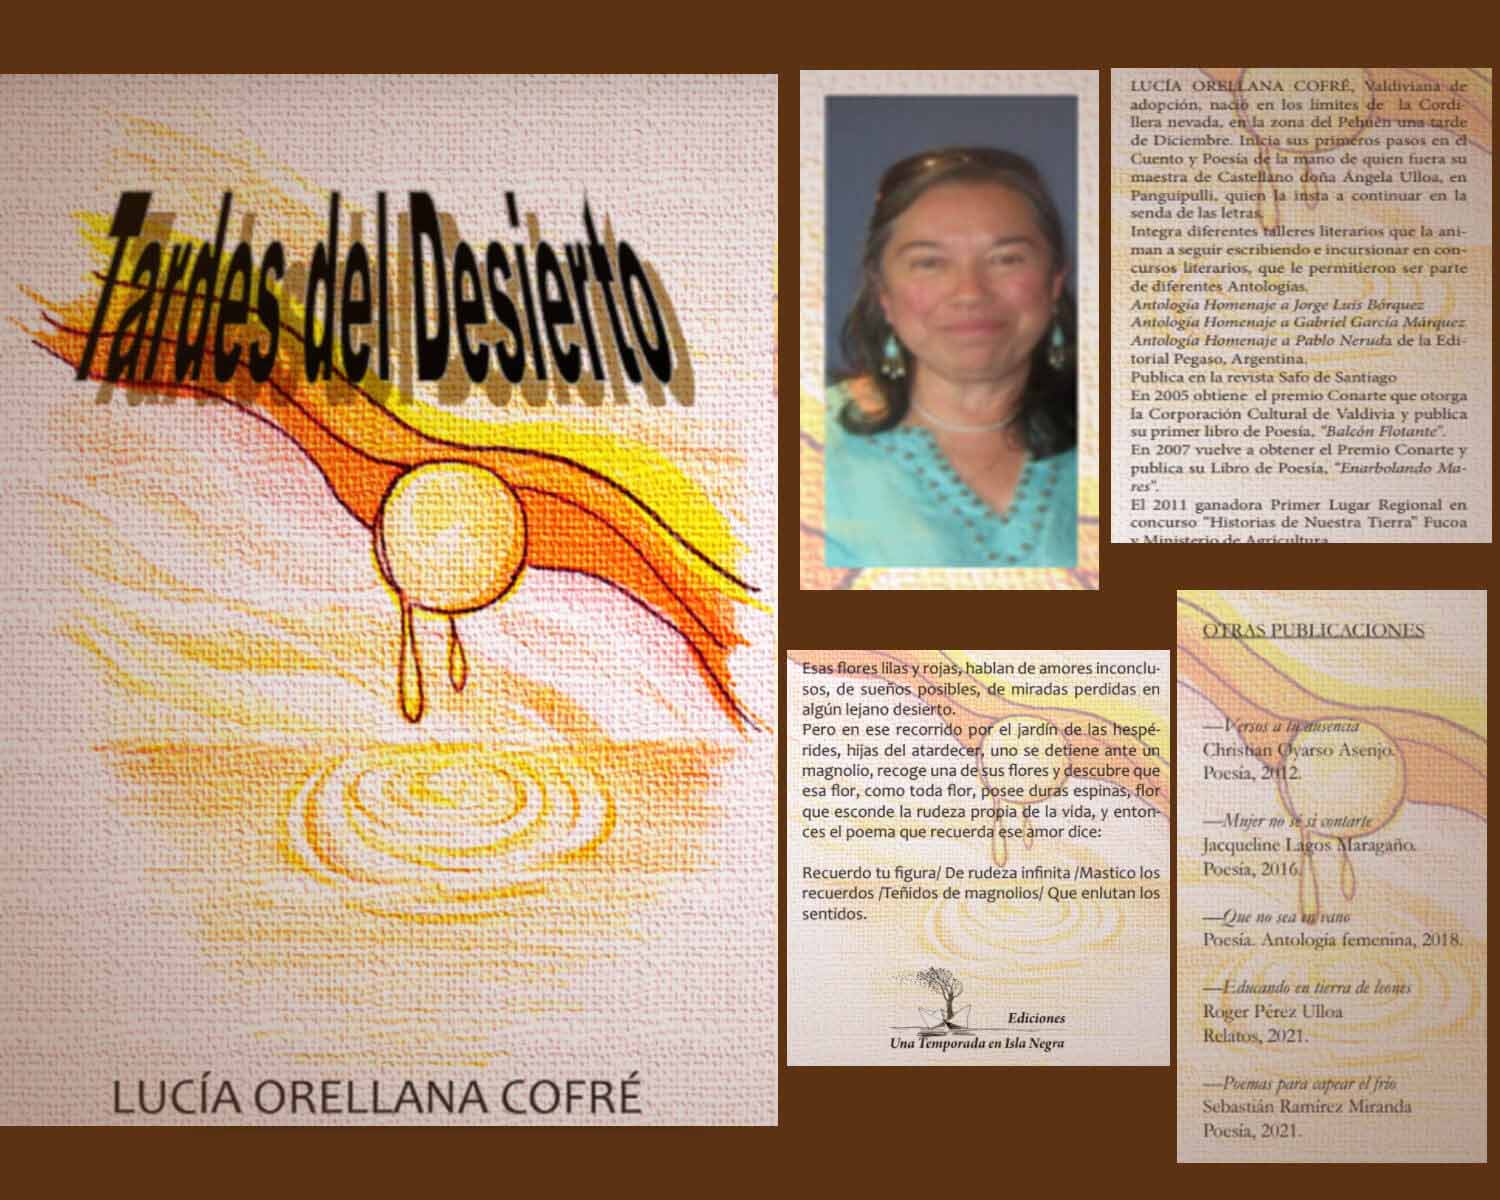 La persona detrás del libro - TARDES DEL DESIERTO - poemario de Lucía Orellana